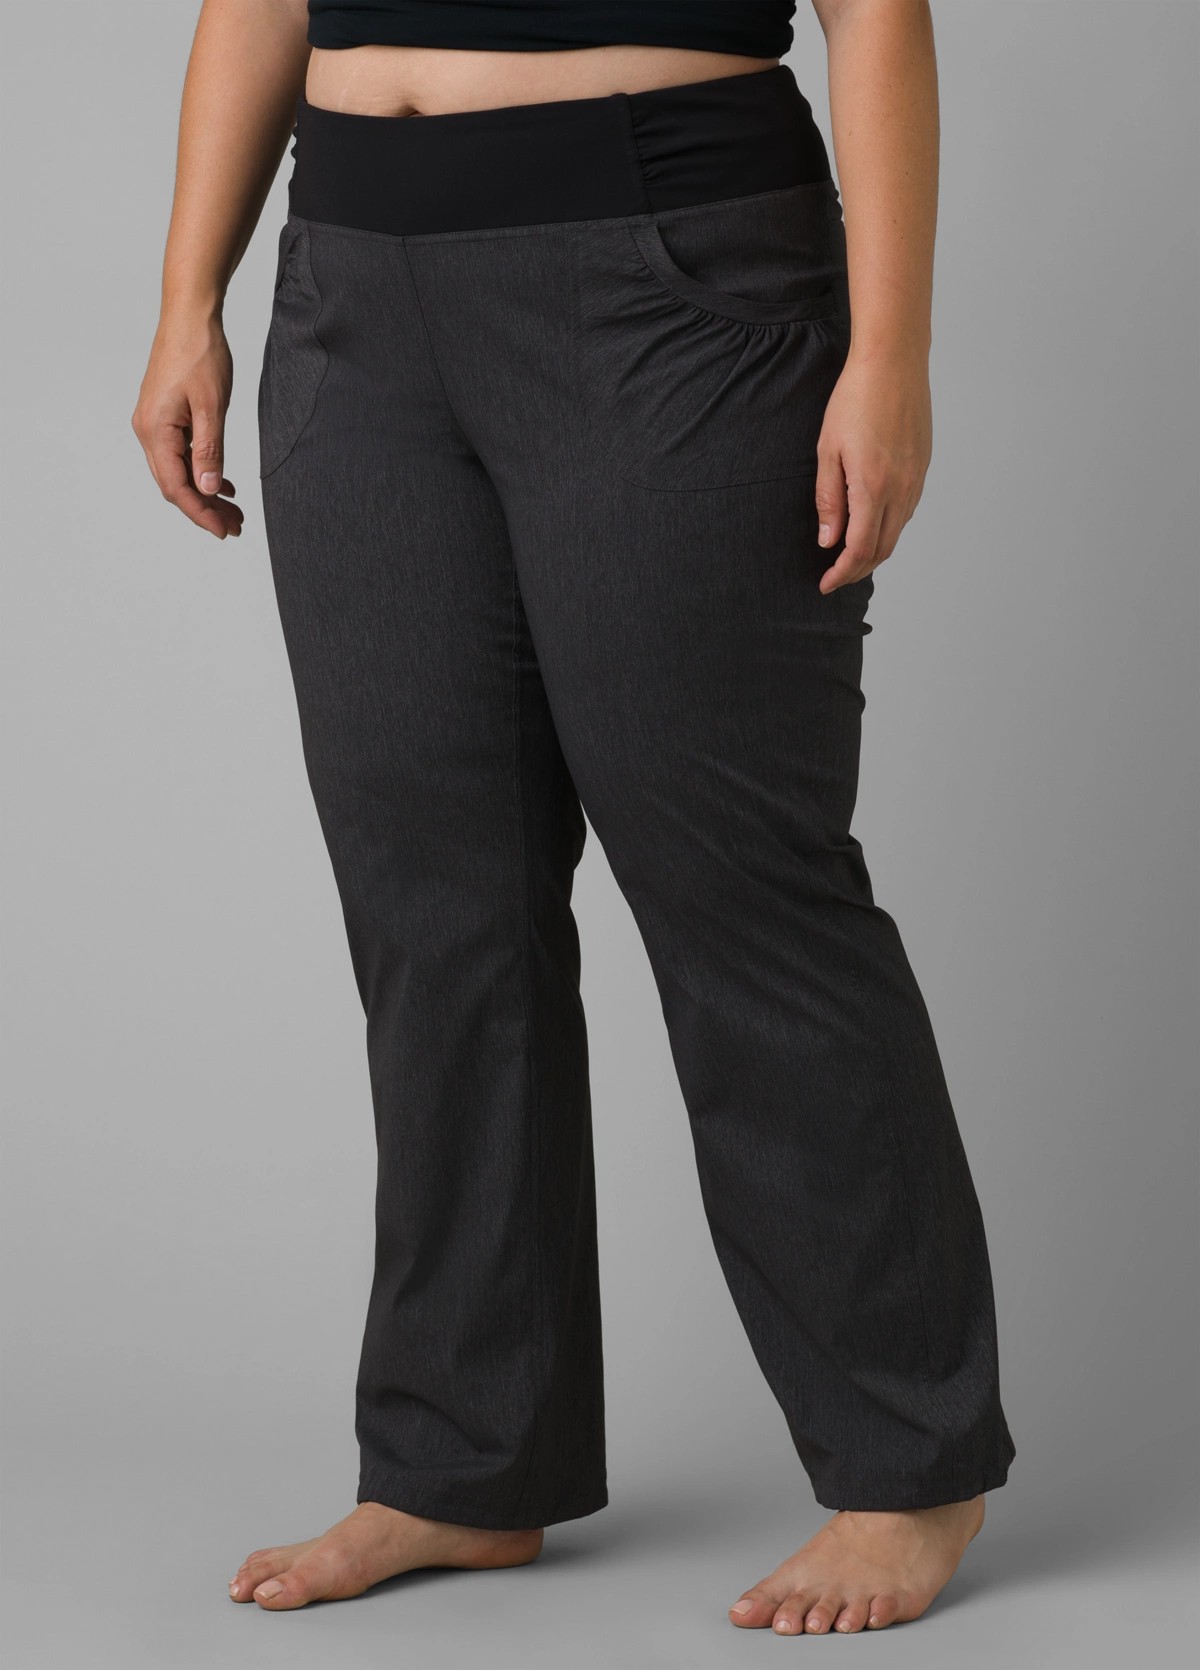 prAna Women's Contour Tall Pants, Charcoal Heather, Medium, Pants